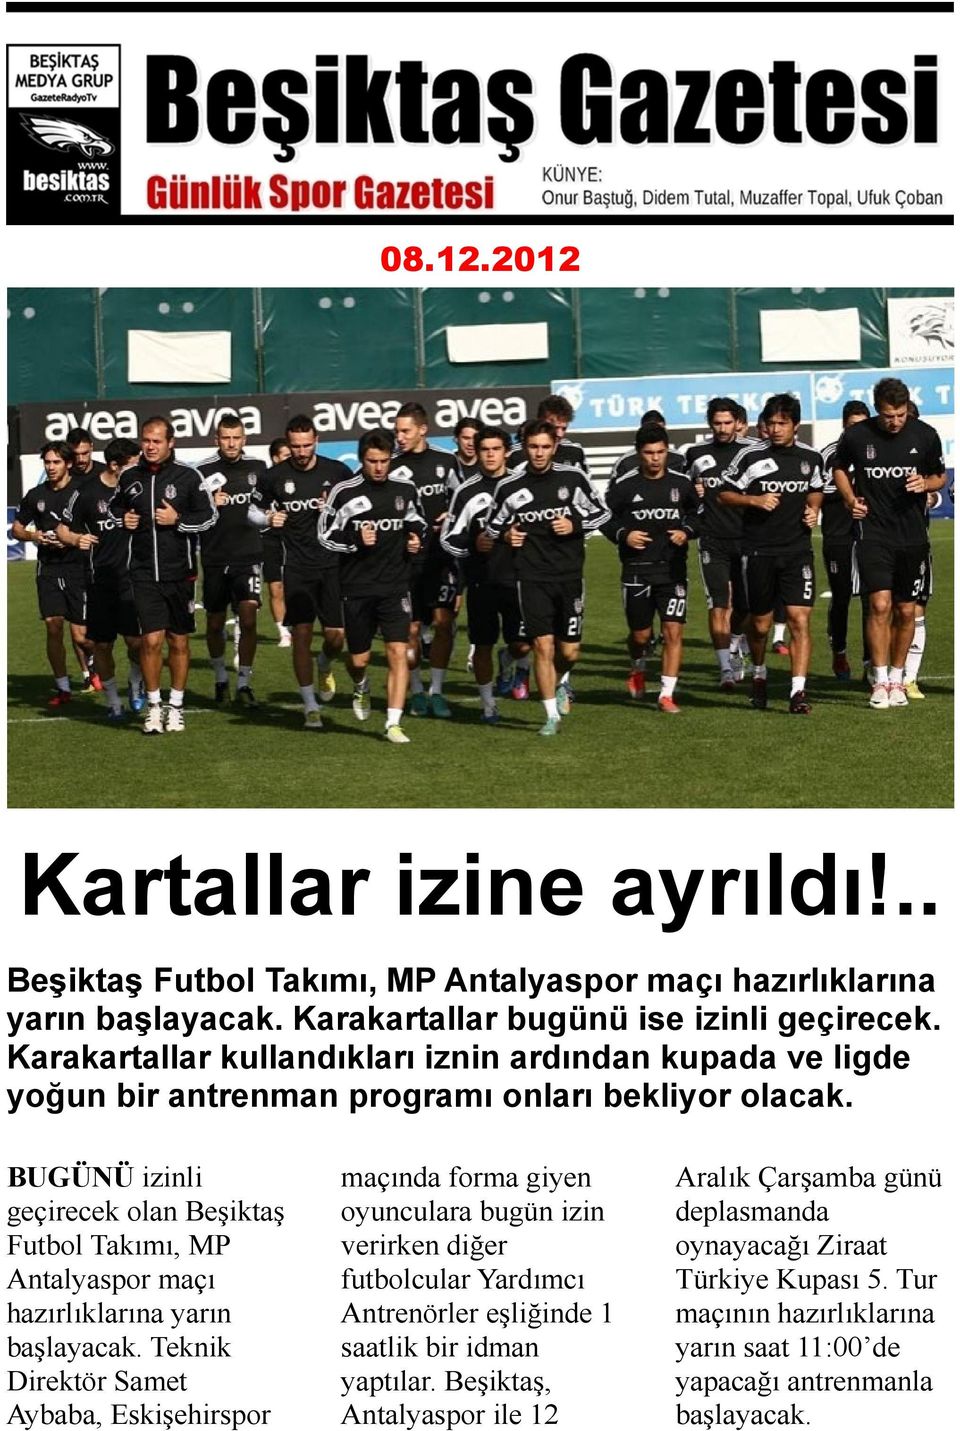 BUGÜNÜ izinli geçirecek olan Beşiktaş Futbol Takımı, MP Antalyaspor maçı hazırlıklarına yarın başlayacak.